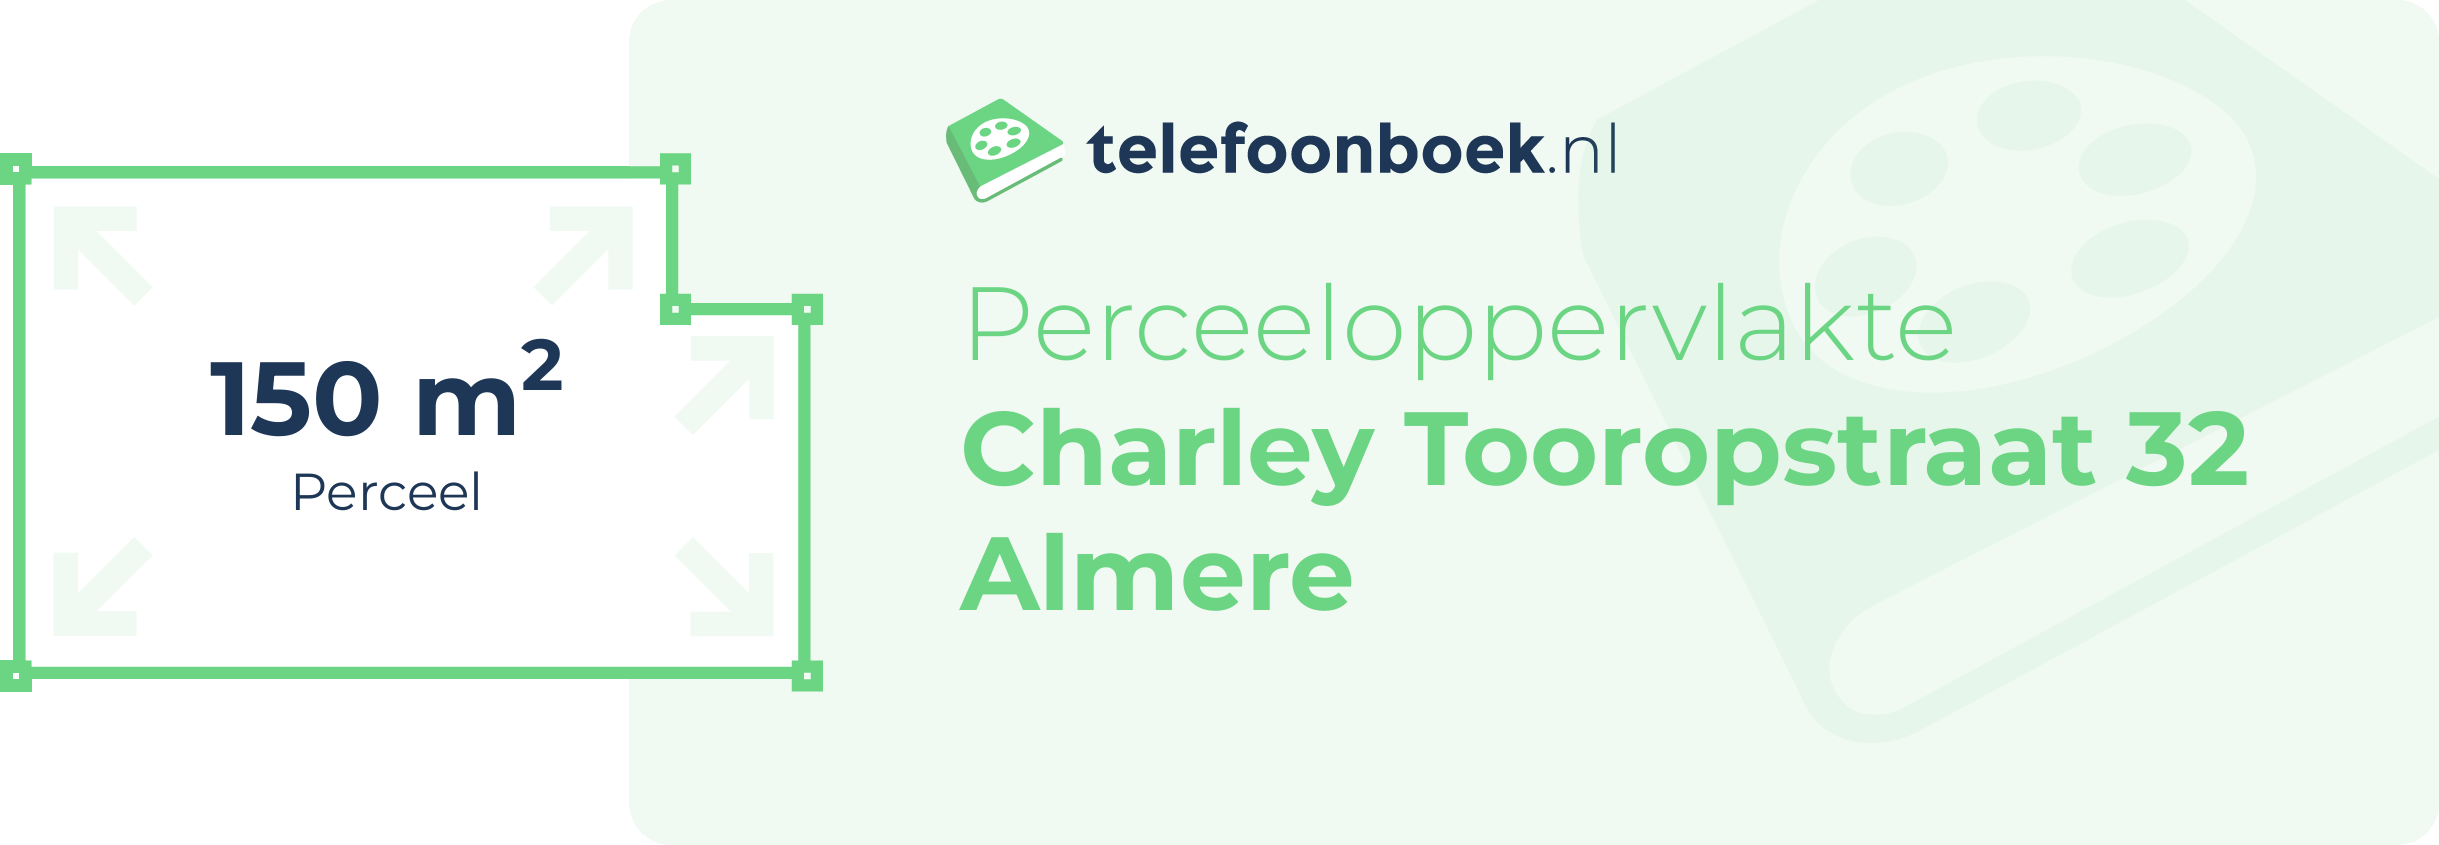 Perceeloppervlakte Charley Tooropstraat 32 Almere